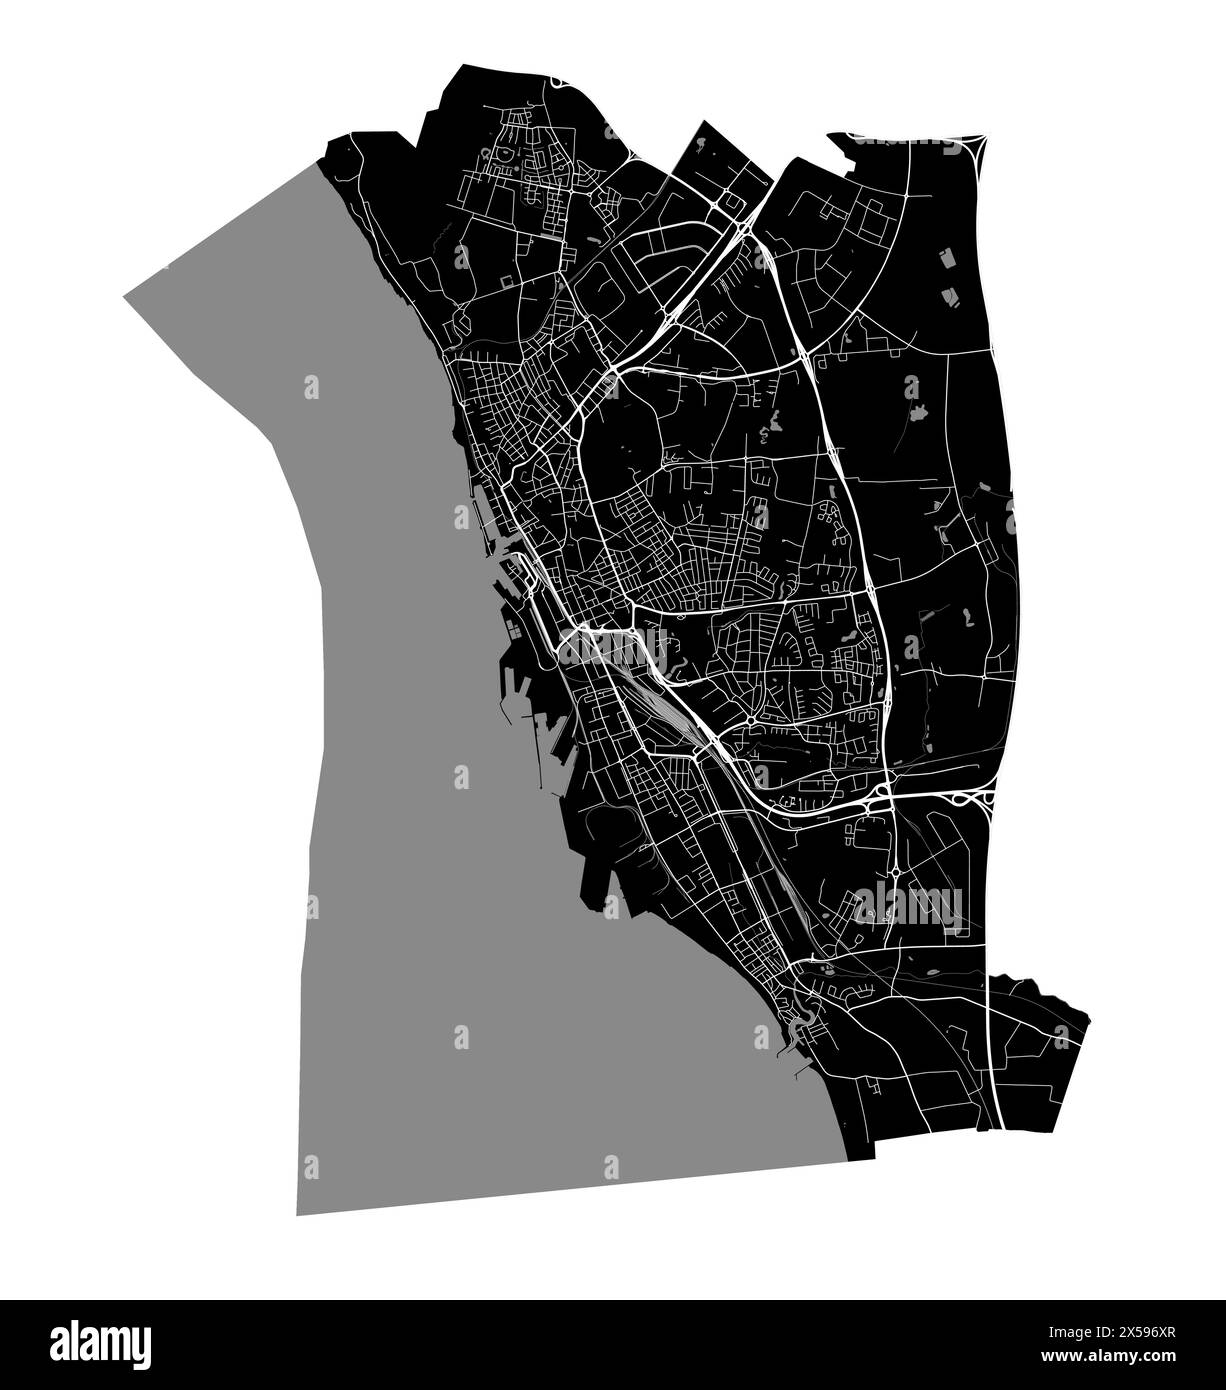 Mappa di Helsingborg, Svezia. Mappa vettoriale dettagliata della città, area metropolitana con confine. Mappa stradale in bianco e nero con strade e acqua. Illustrazione Vettoriale